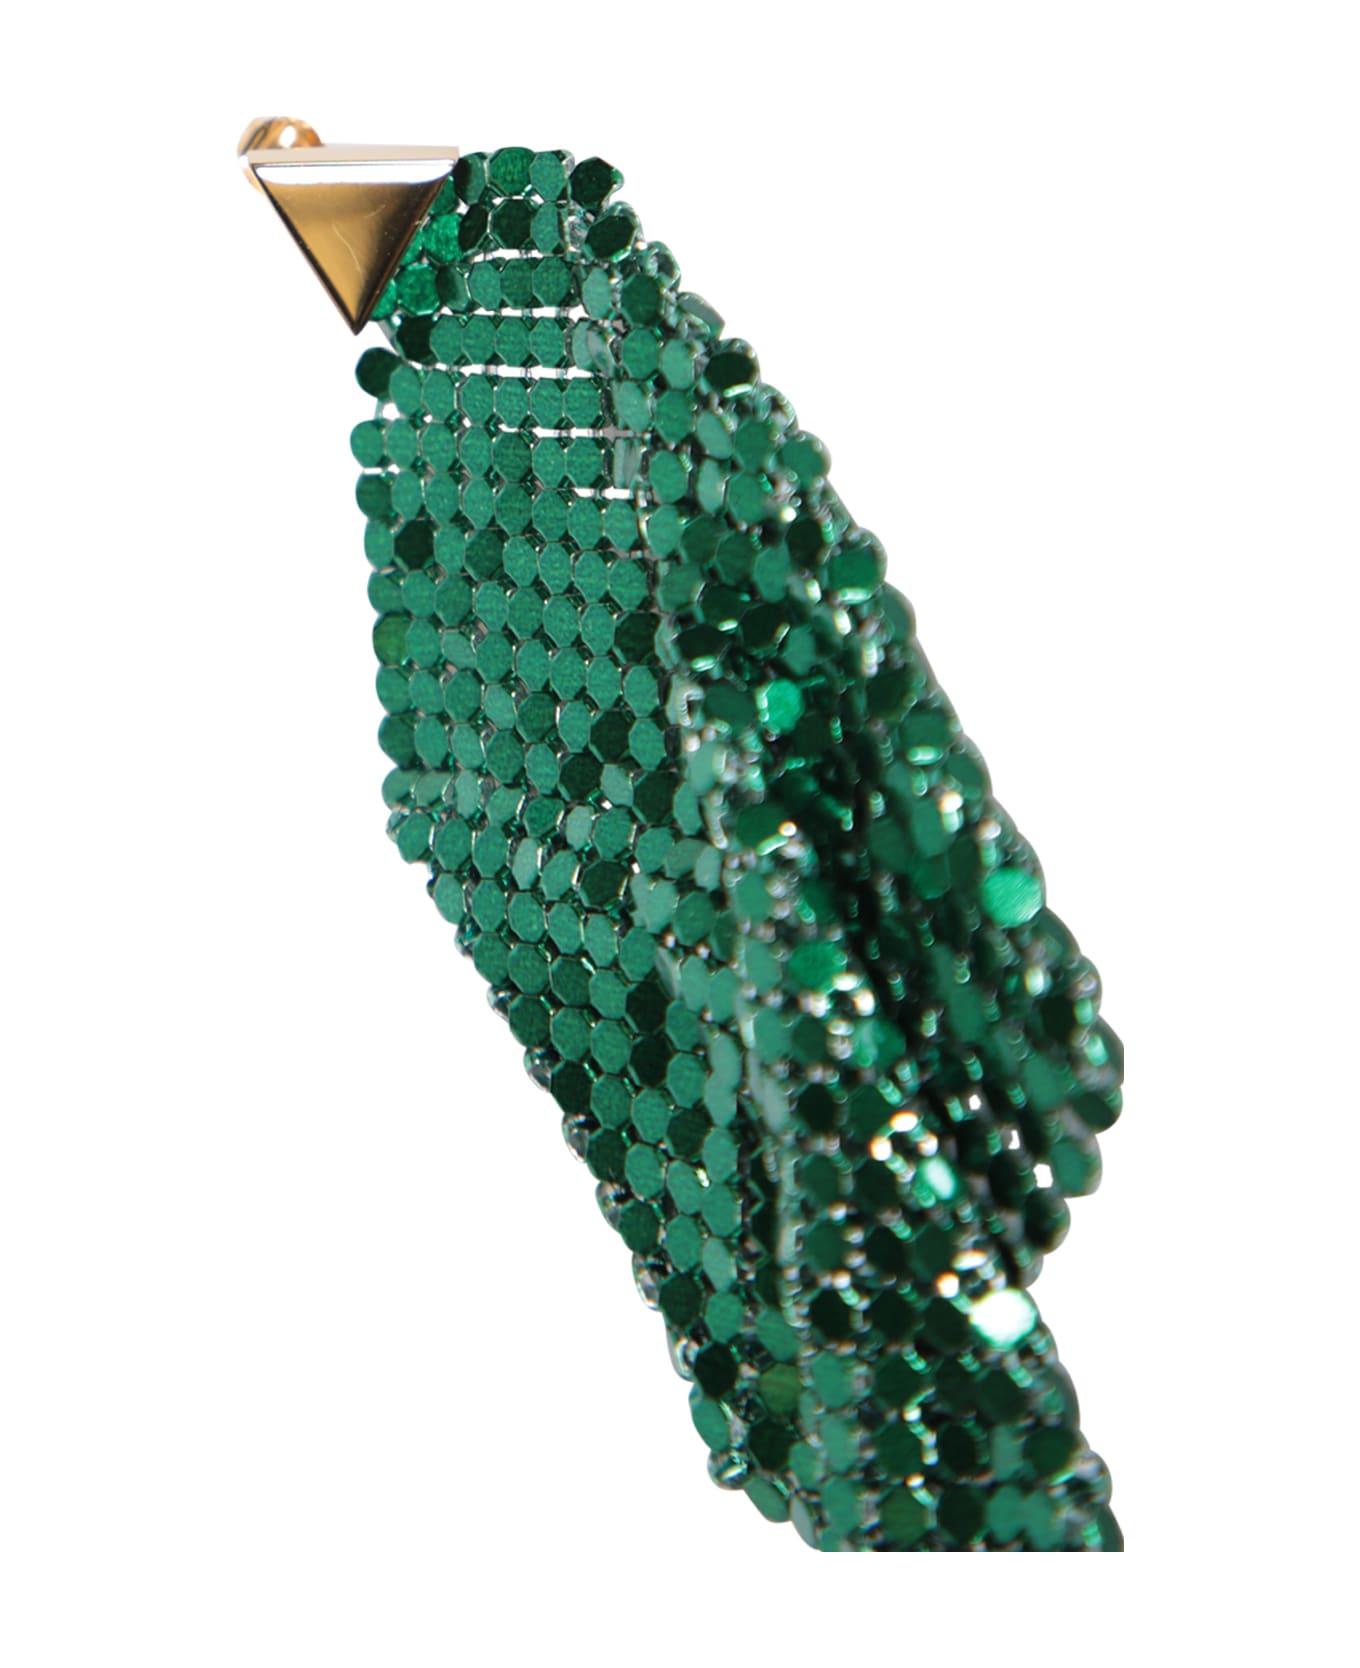 Paco Rabanne Pixel Emerald Earrings - Green